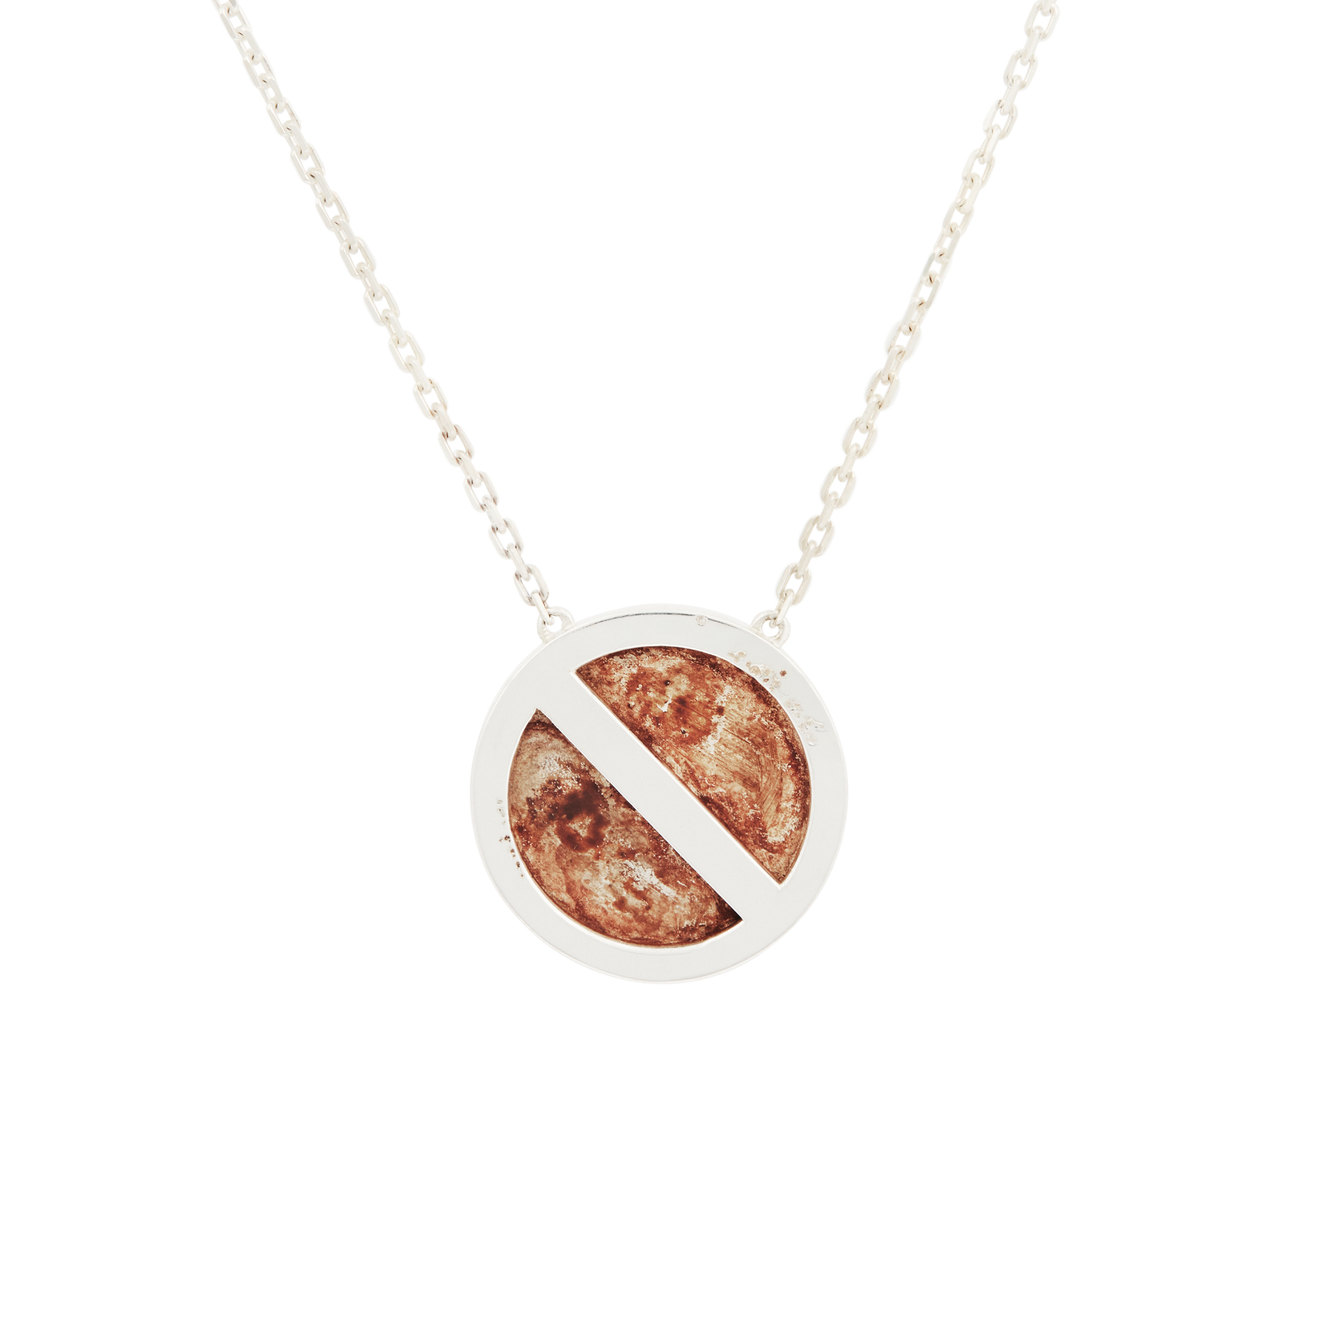 AMARIN Jewelry Подвеска из серебра «Стоянка запрещена» amarin jewelry позолоченная подвеска cork бочка